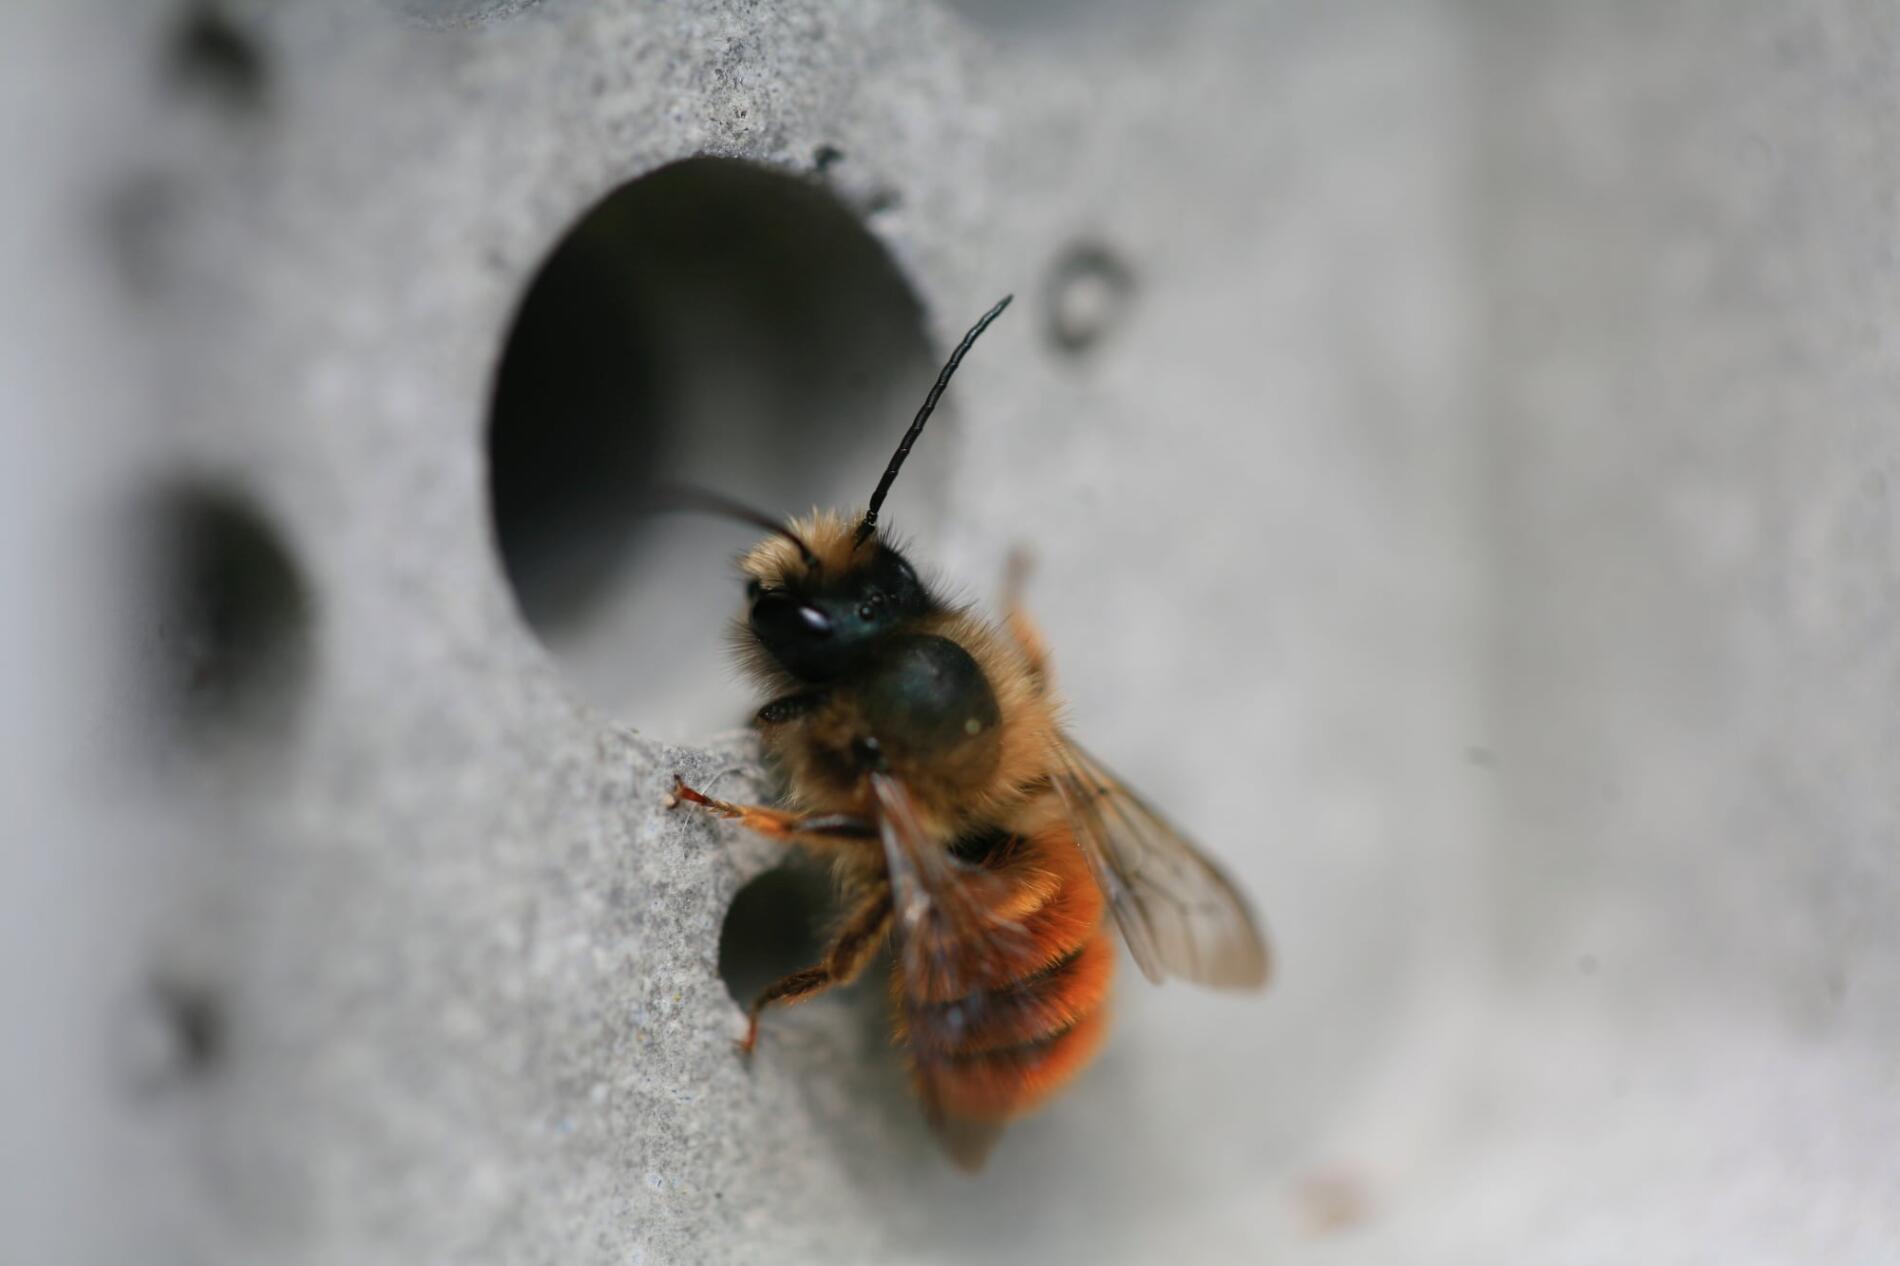 arquitectura diminta para dar hogar a las abejas solitarias green & blue abeja asomada por el agujero del ladrillo para abejas